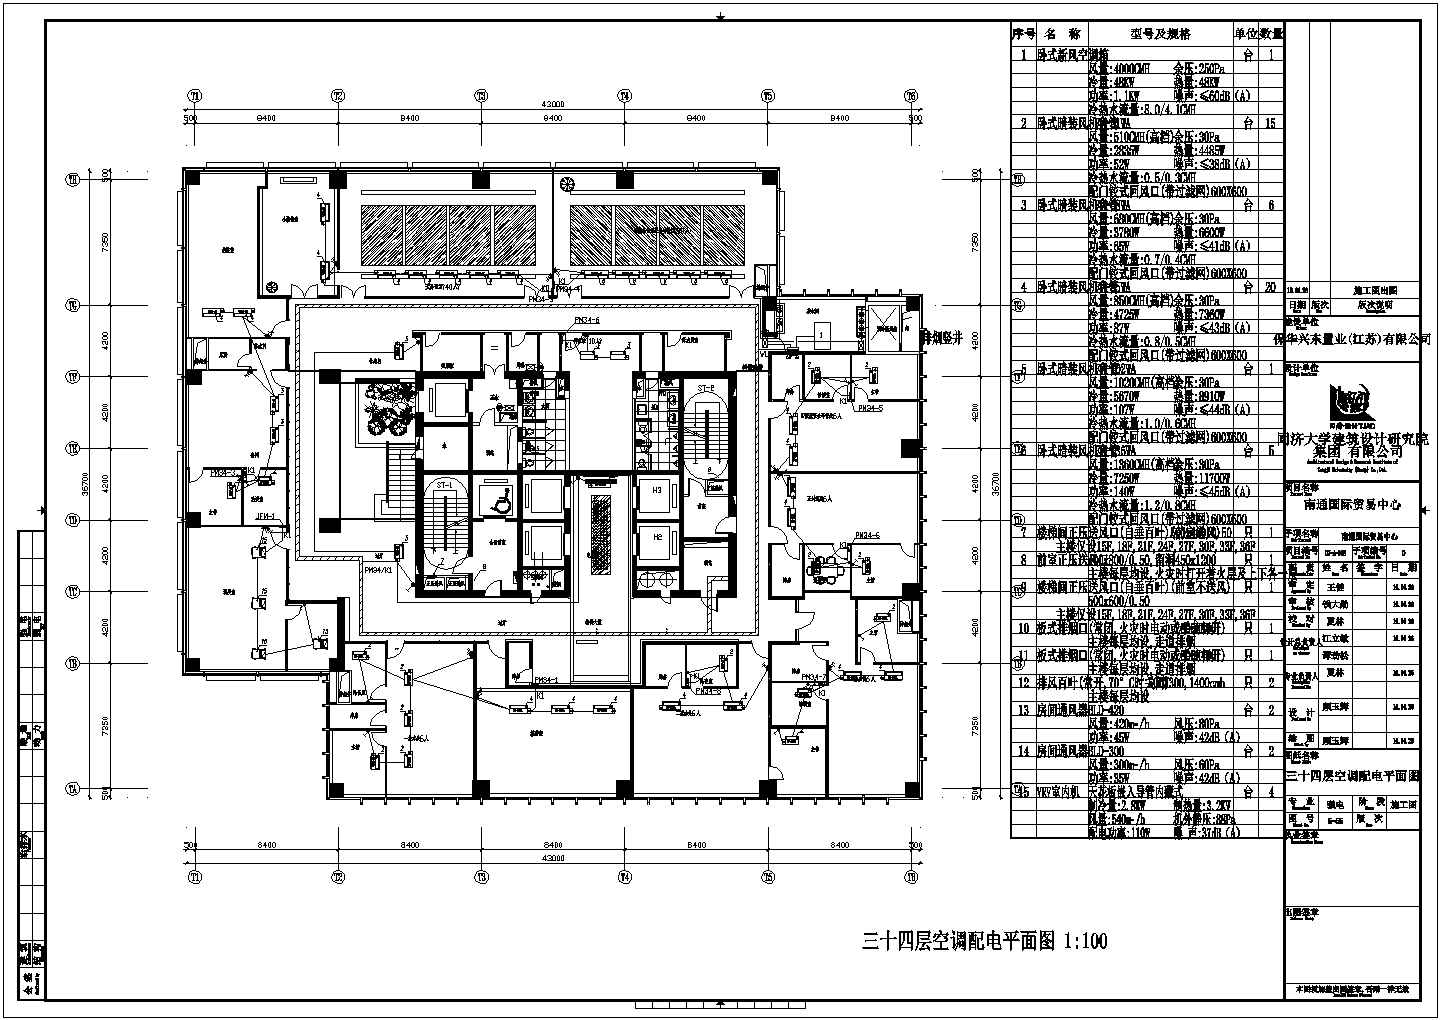 南通国际贸易中心精装修详细建筑施工图